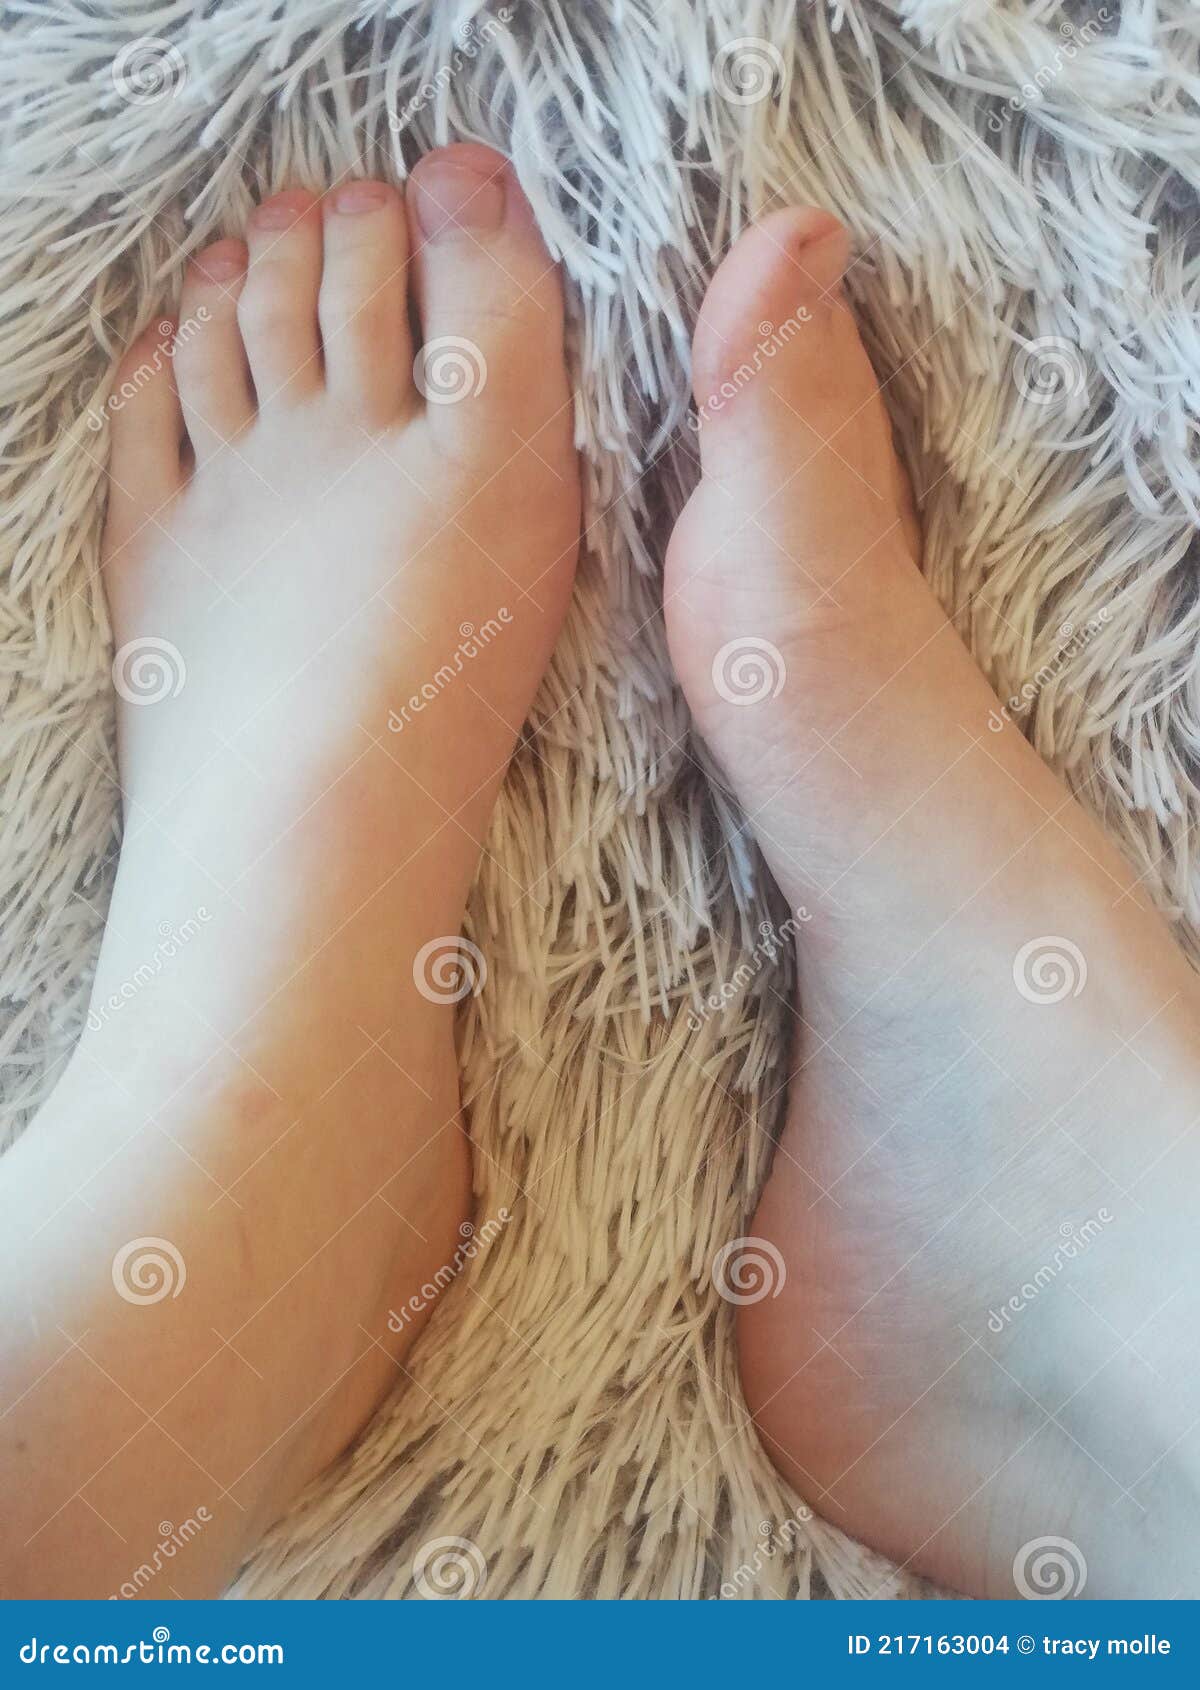 Bbw with pretty feet